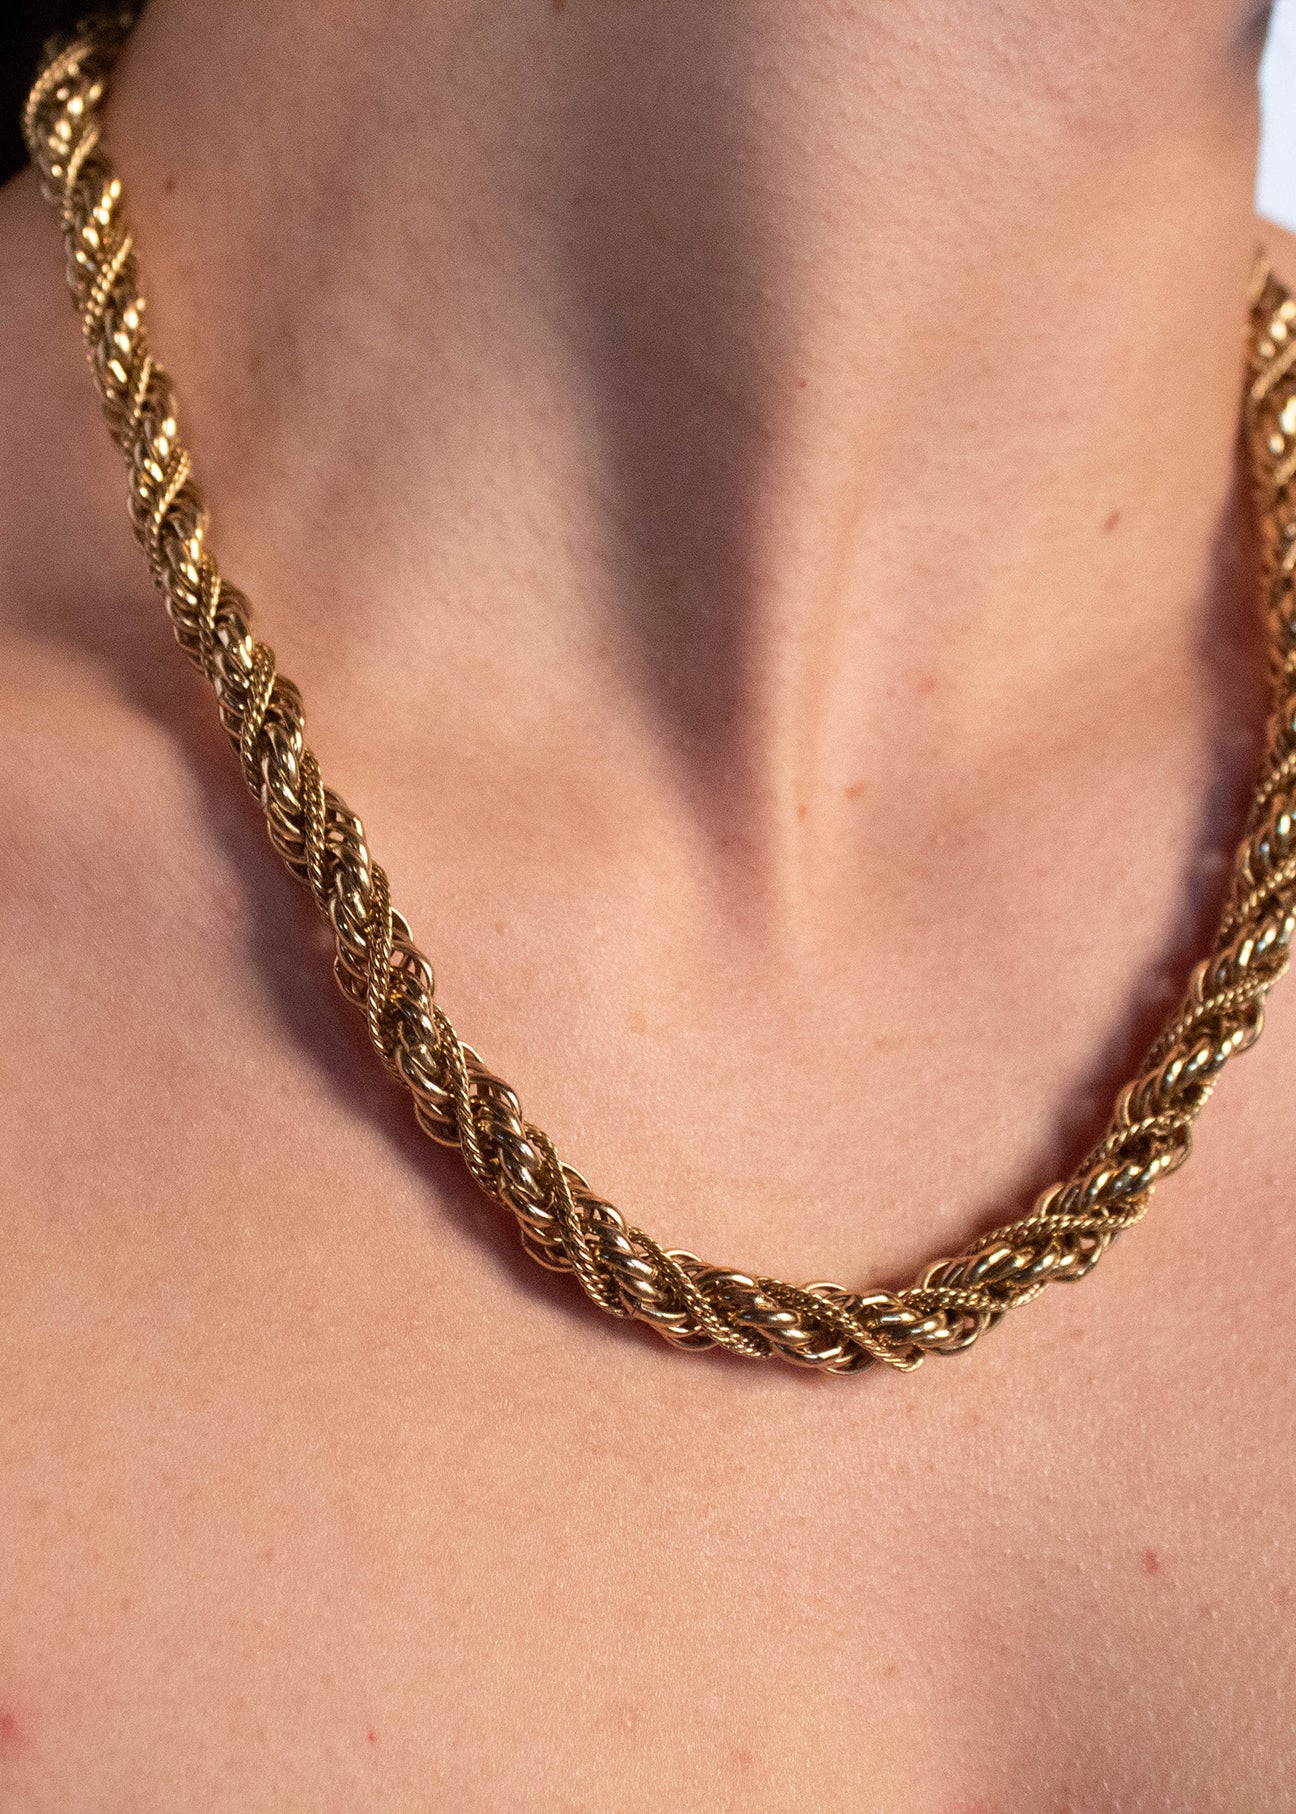 Vintage Monet Heart Pendant & Chain Necklace - Etsy